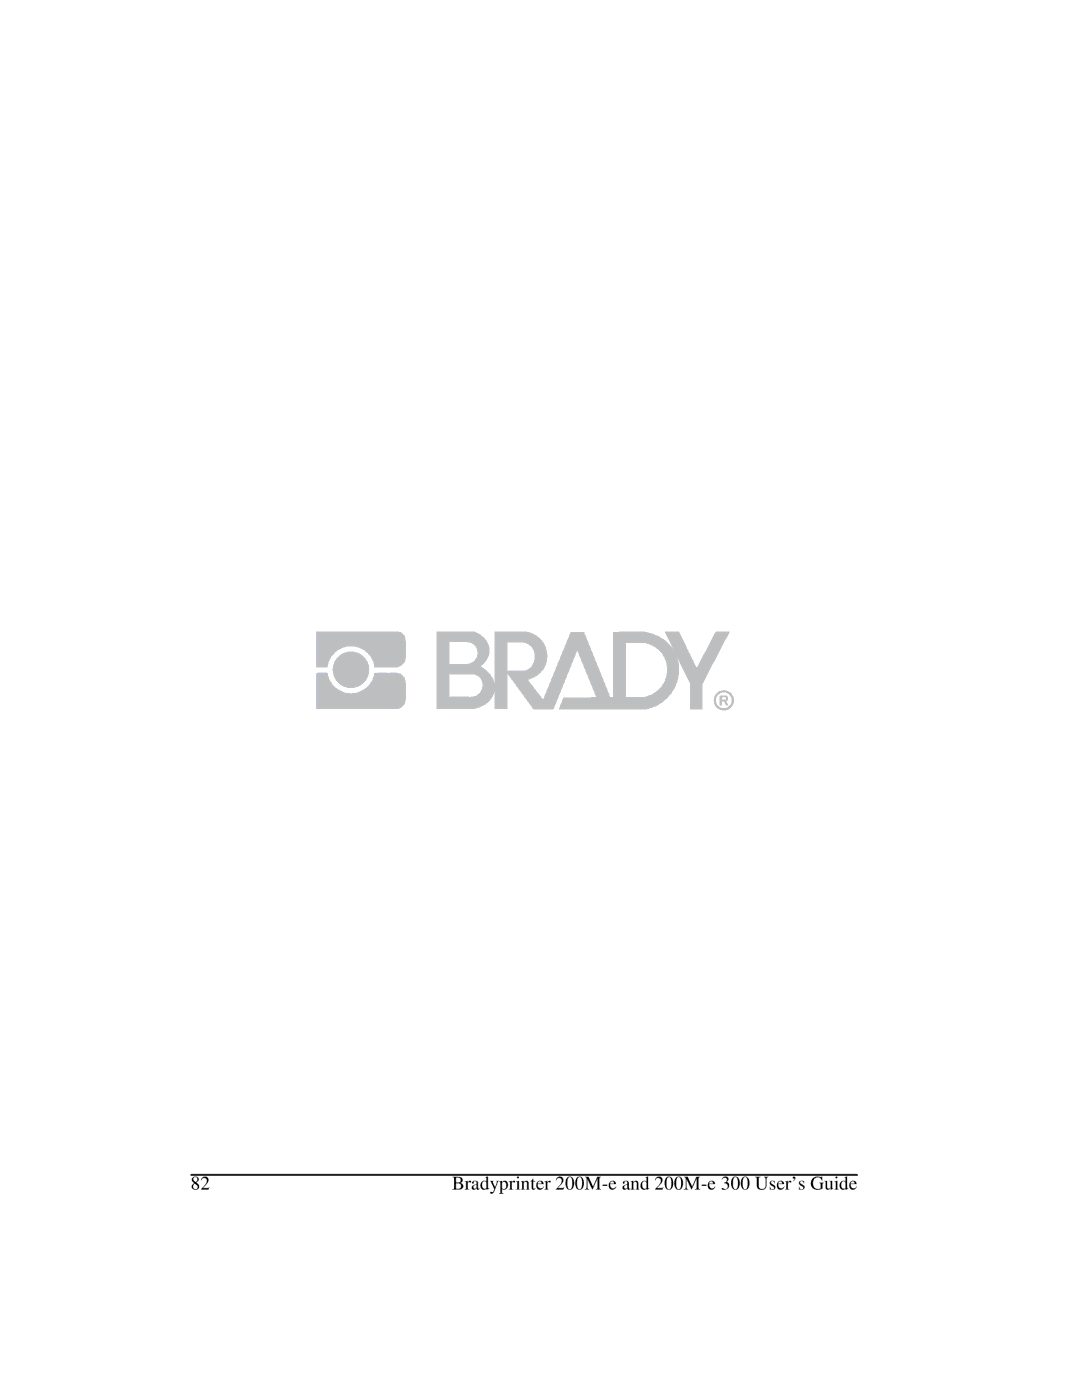 Brady manual Bradyprinter 200M-e and 200M-e 300 User’s Guide 